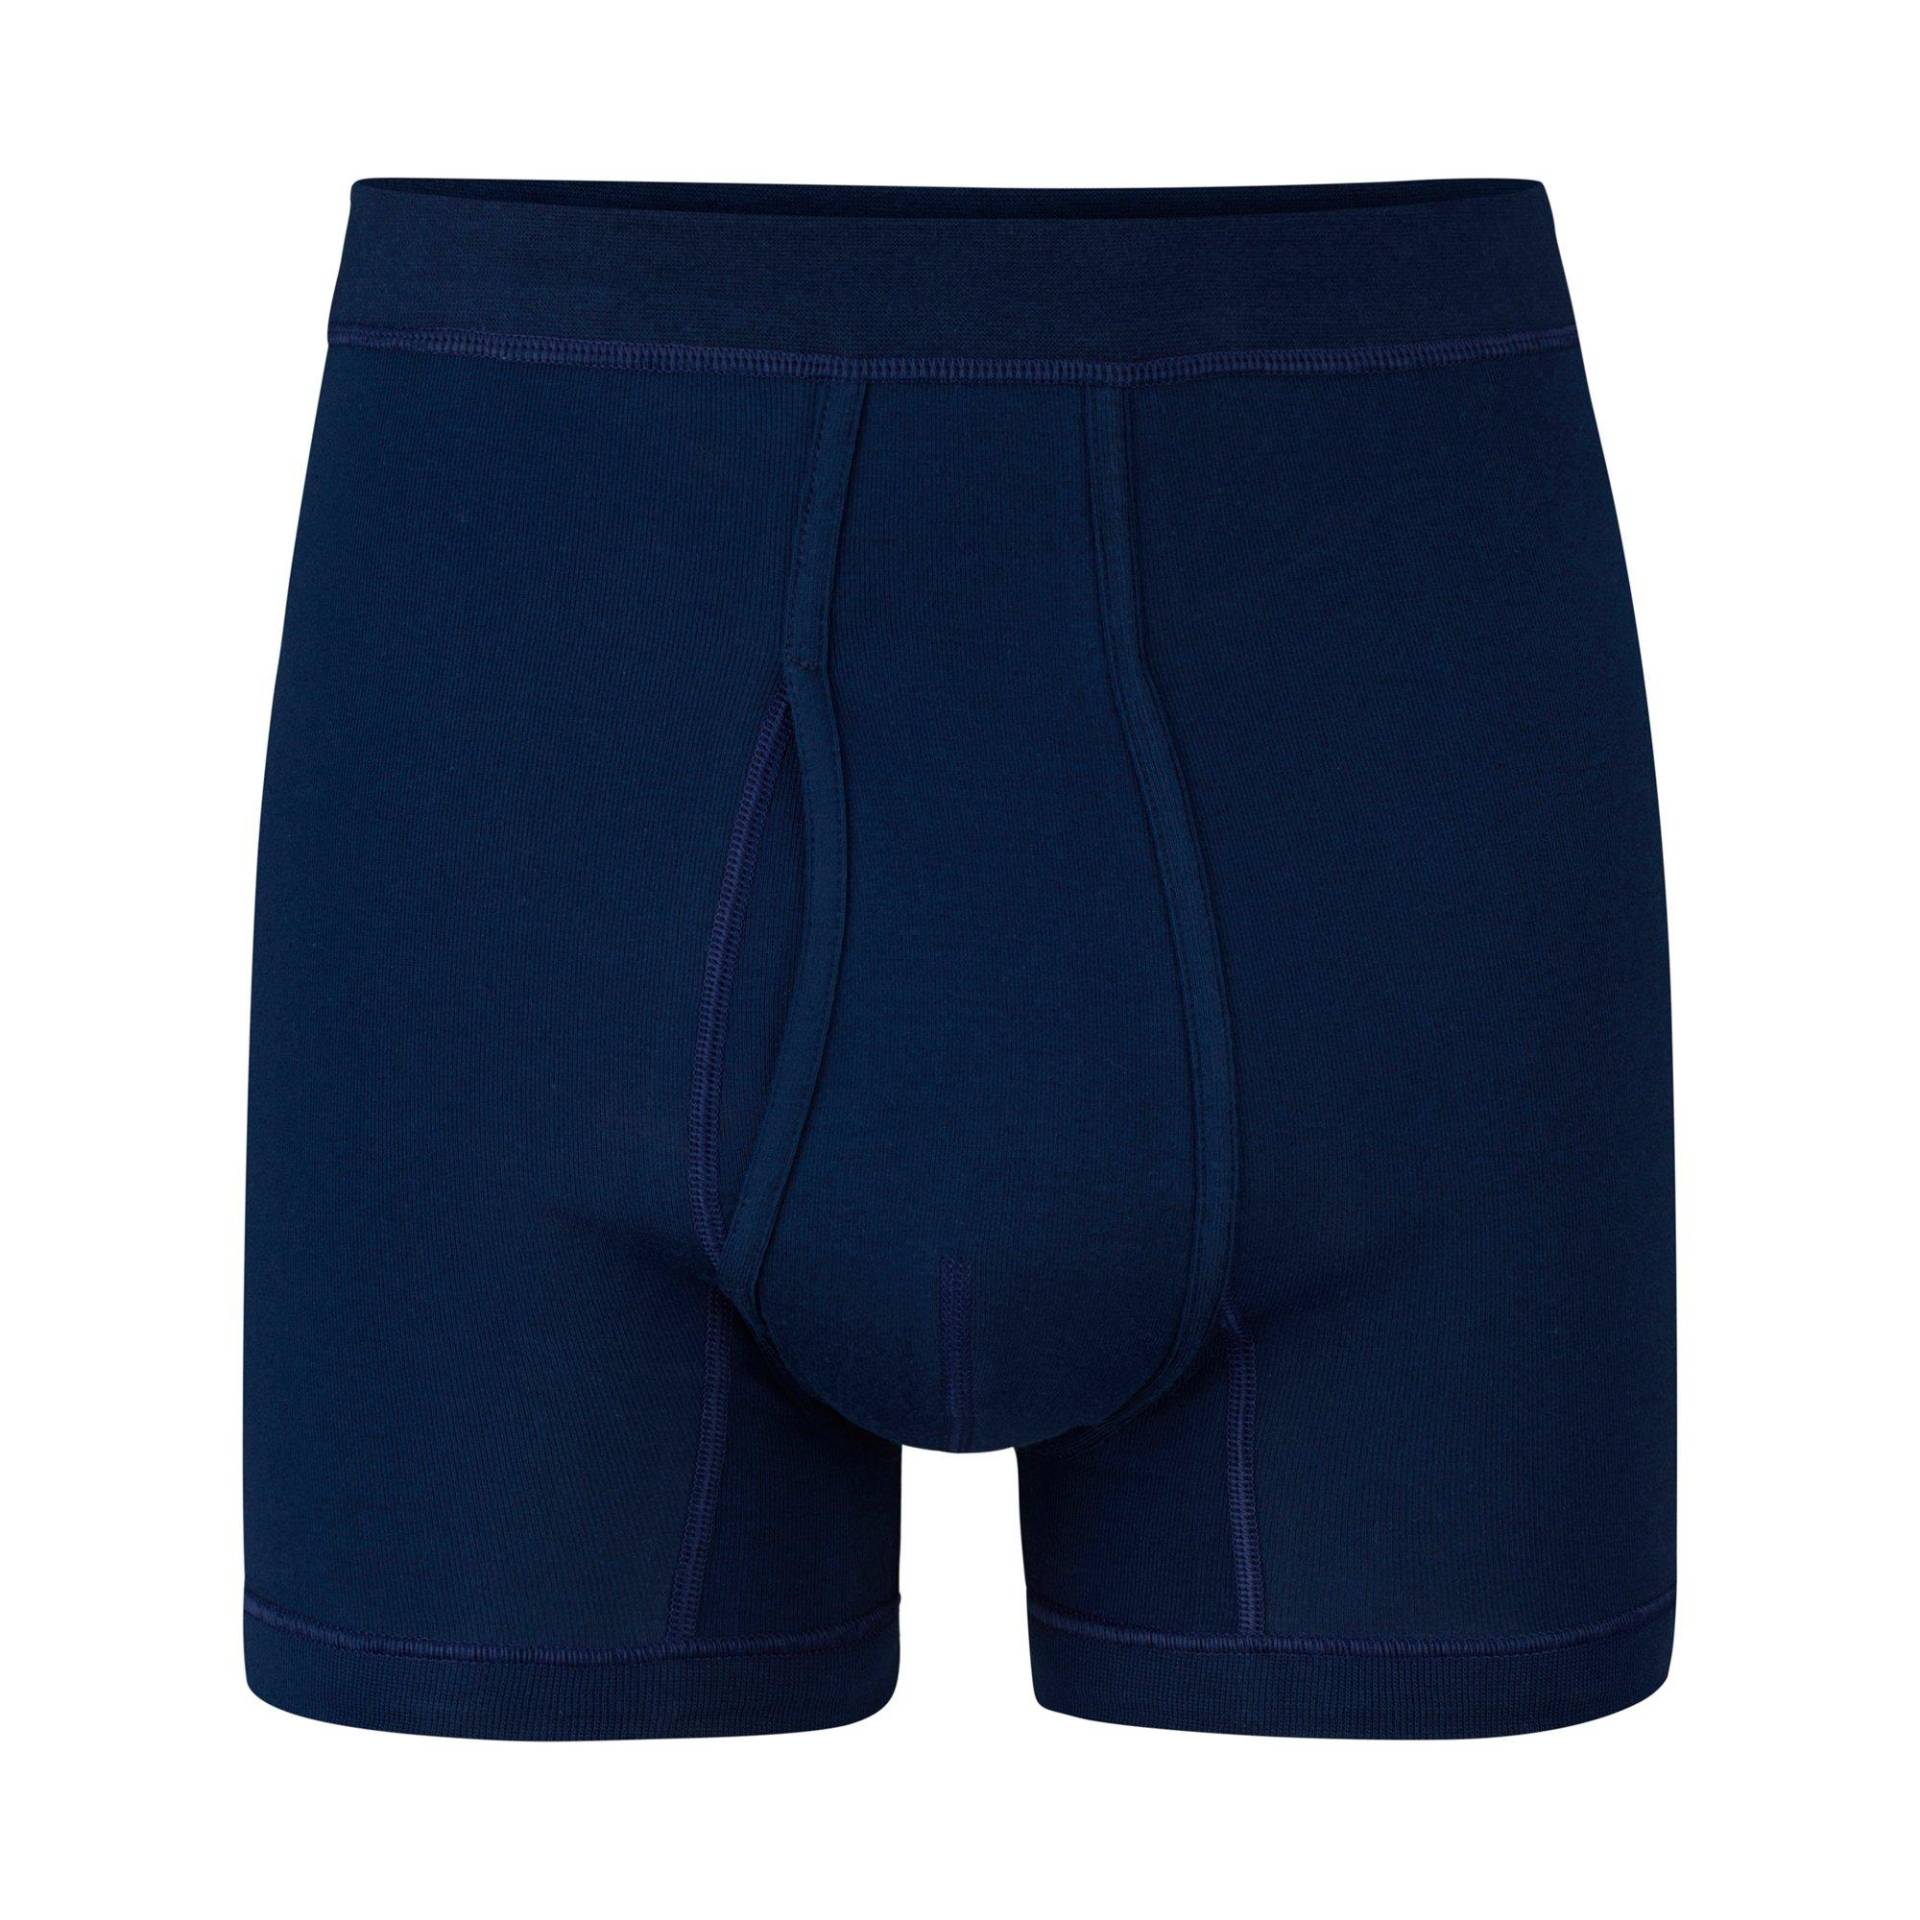 Panty Herren Nachtblau M von ISA bodywear